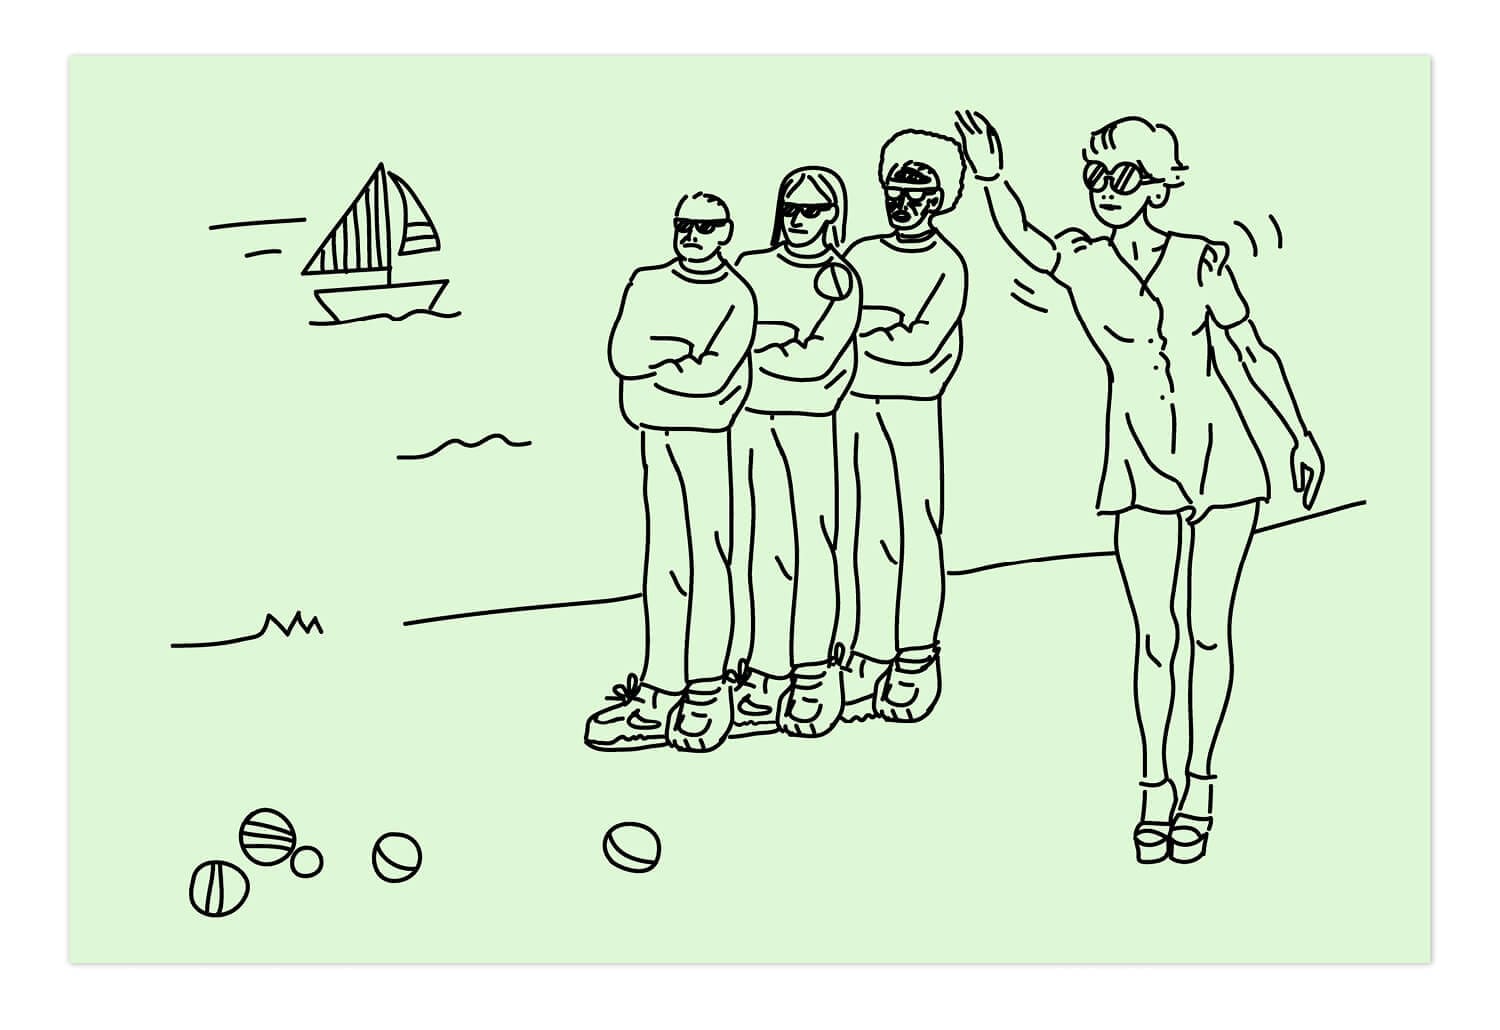 illustration carte postale signé Ichetkar, joueurs de pétanque au Chalet des îles signé IchetKar